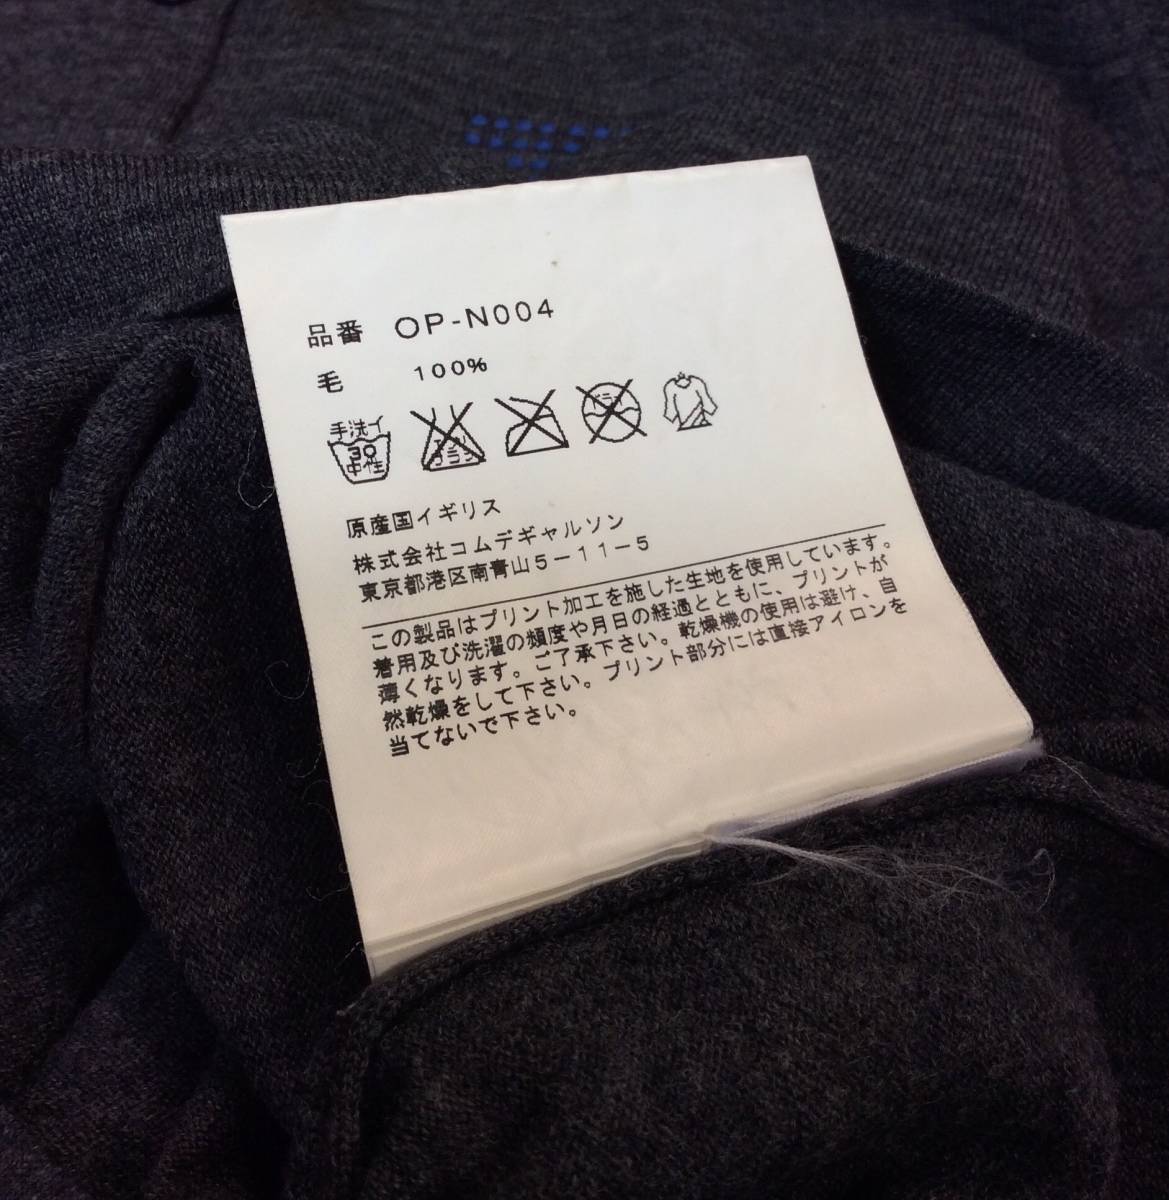 COMME des GARCONS Comme des Garcons × JOHN SMEDLEY John Smedley шерсть вязаный кардиган свитер серый S стоимость доставки 250 иен (ma)